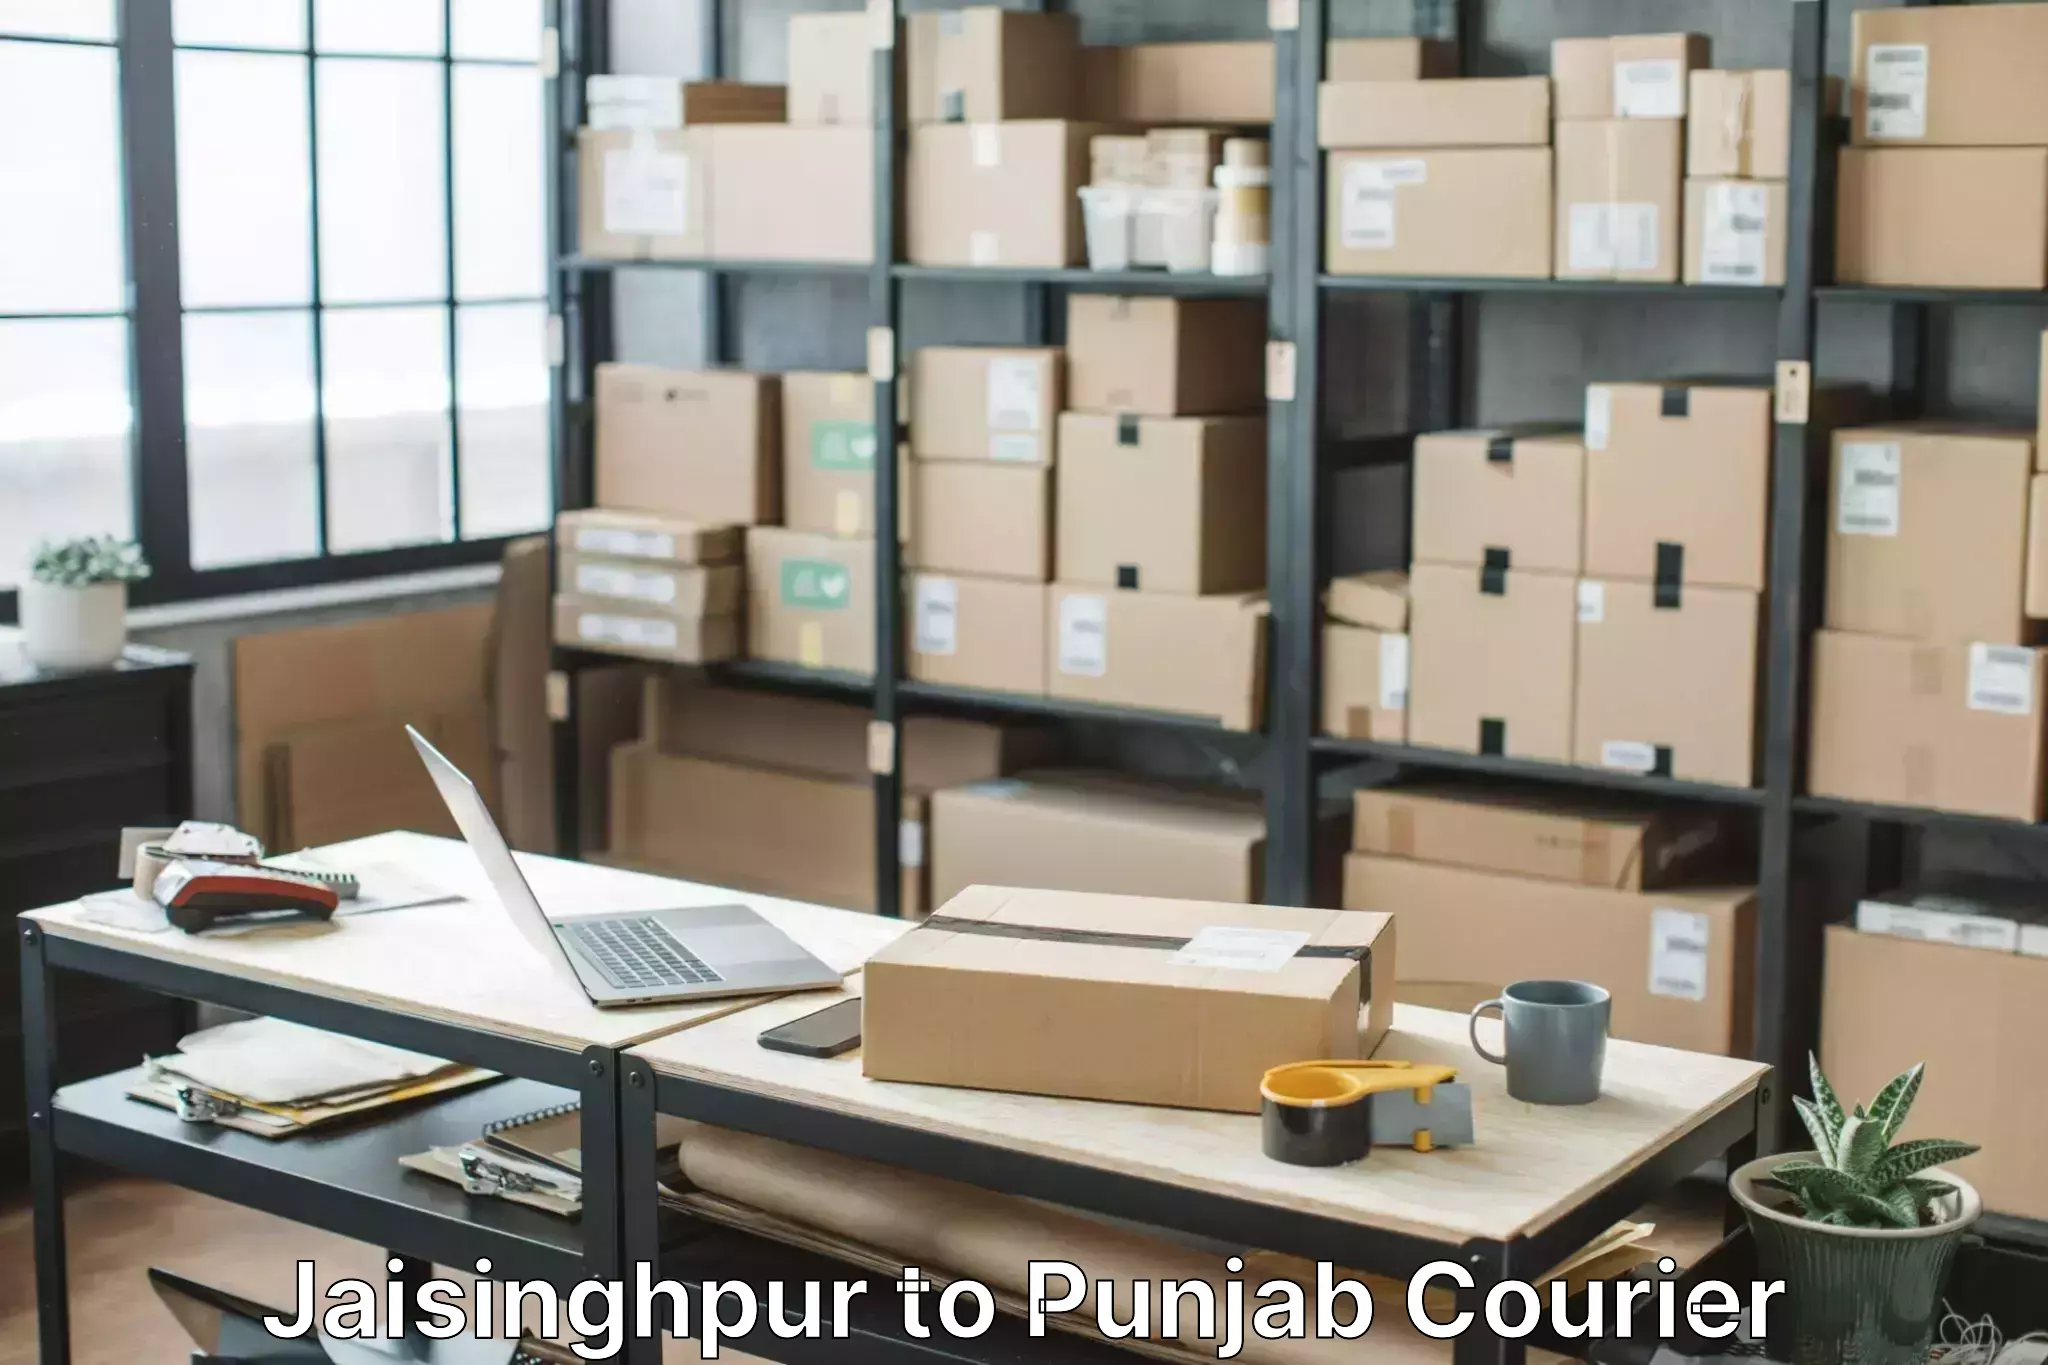 Furniture moving services Jaisinghpur to Faridkot